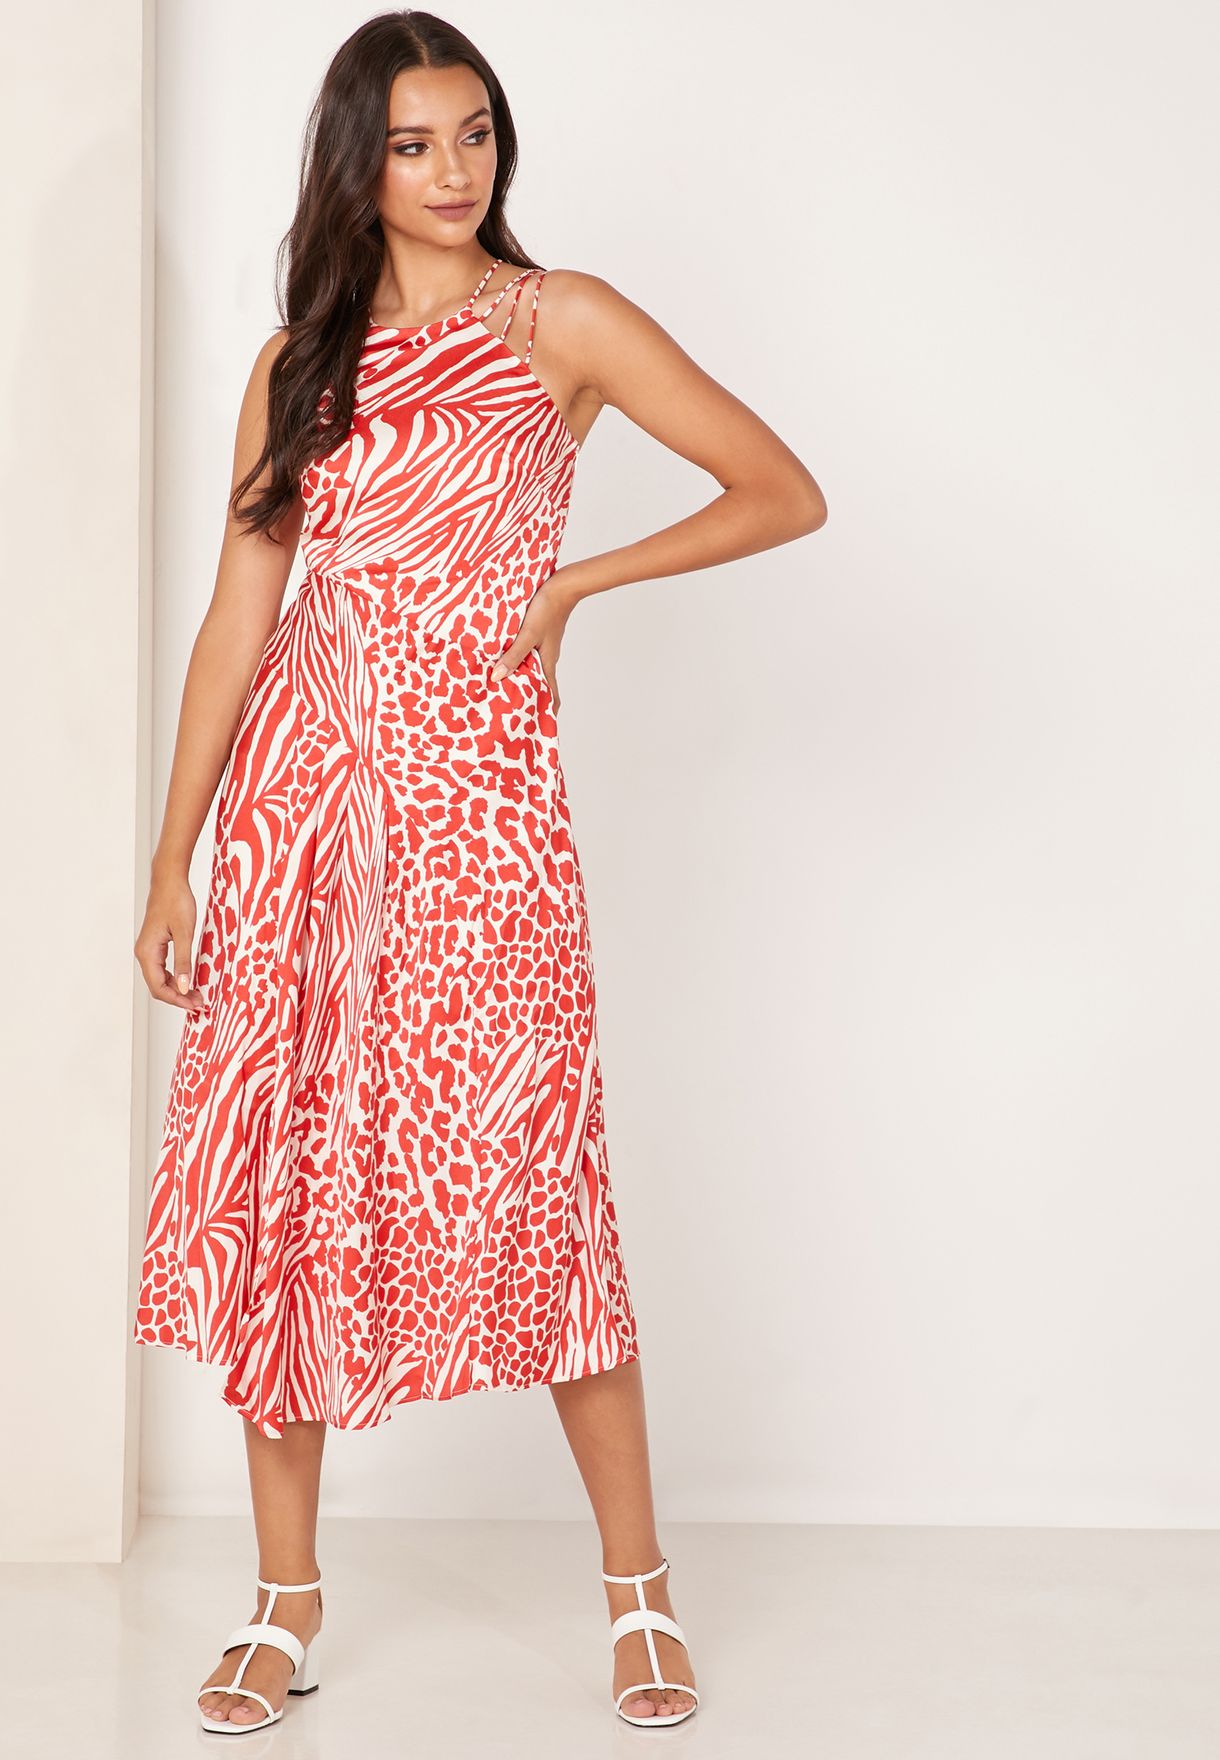 Karen Millen Leopard Print Dress Top Sellers, UP TO 51% OFF | www 